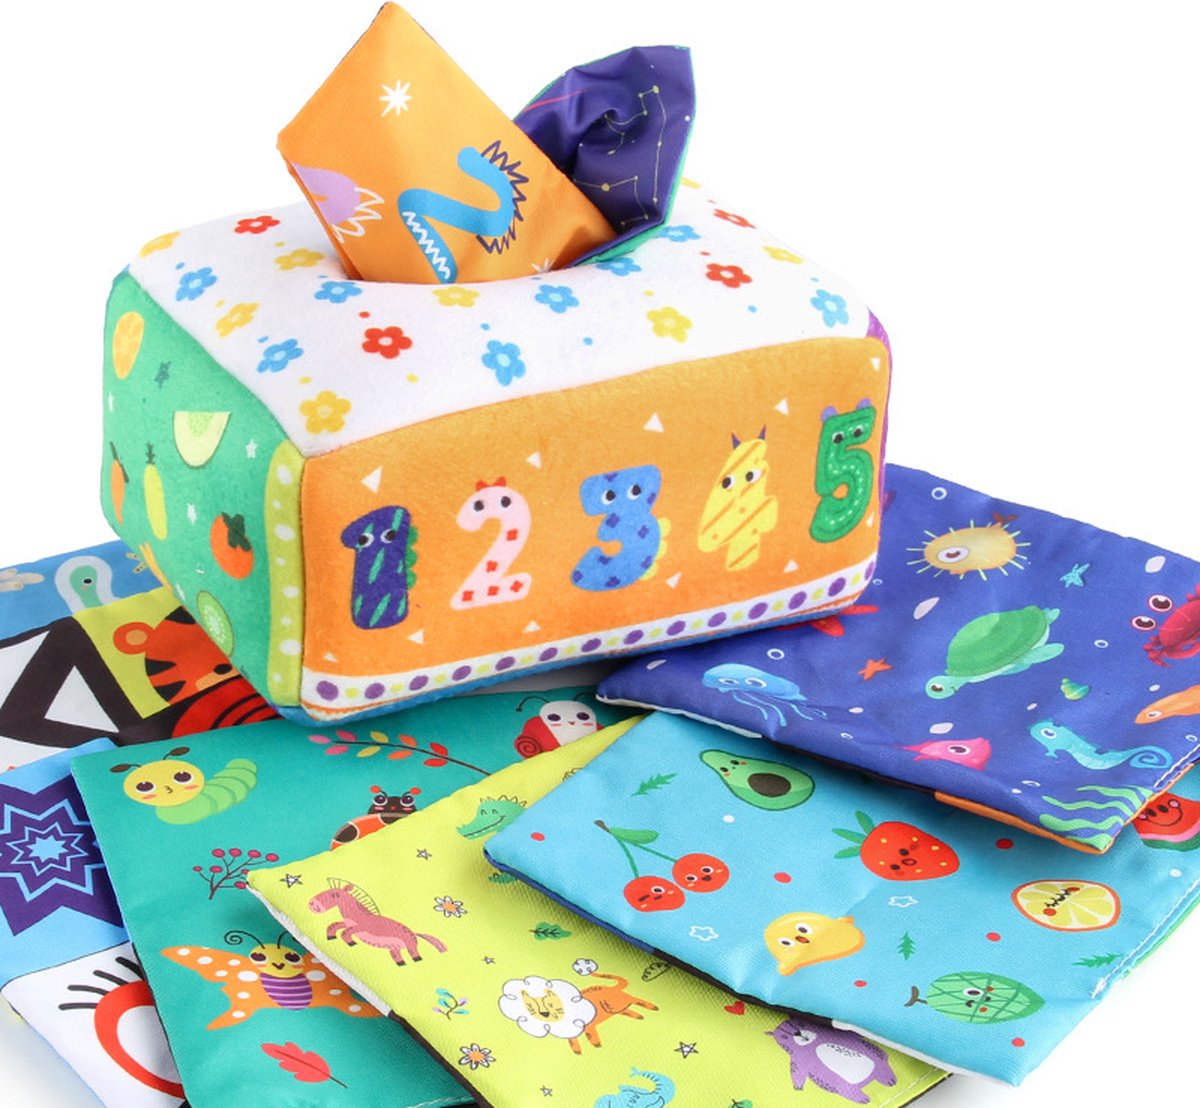 Magic Tissue Box - Baby Speelgoed - Dreumes Speelgoed - Cijfers - Alfabet - Educatief Spelen - Montessori - Baby Doekjes Spel - Zintuigen Oefenen - Cadeau Dreumes - Cadeau Peuter - Baby Spel - Zelfstandigheid Stimuleren - Ontwikkeling Fijne Motoriek